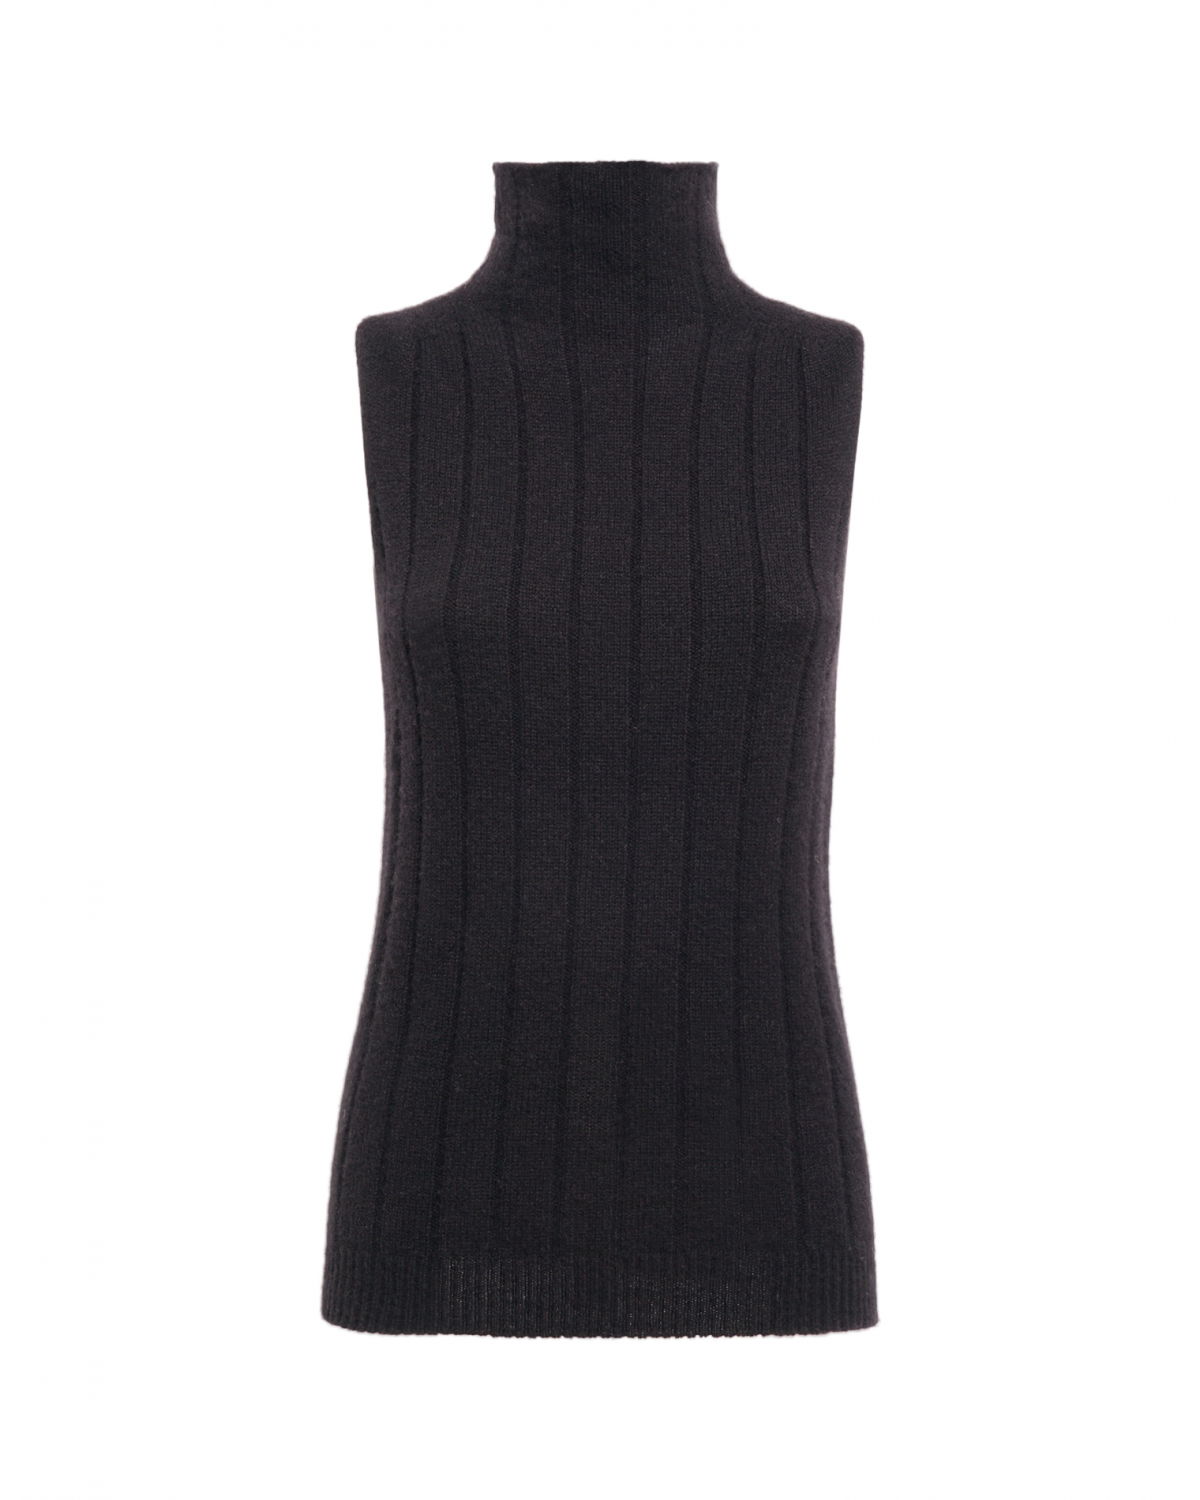 Black cashmere turtleneck | Sale | Genny